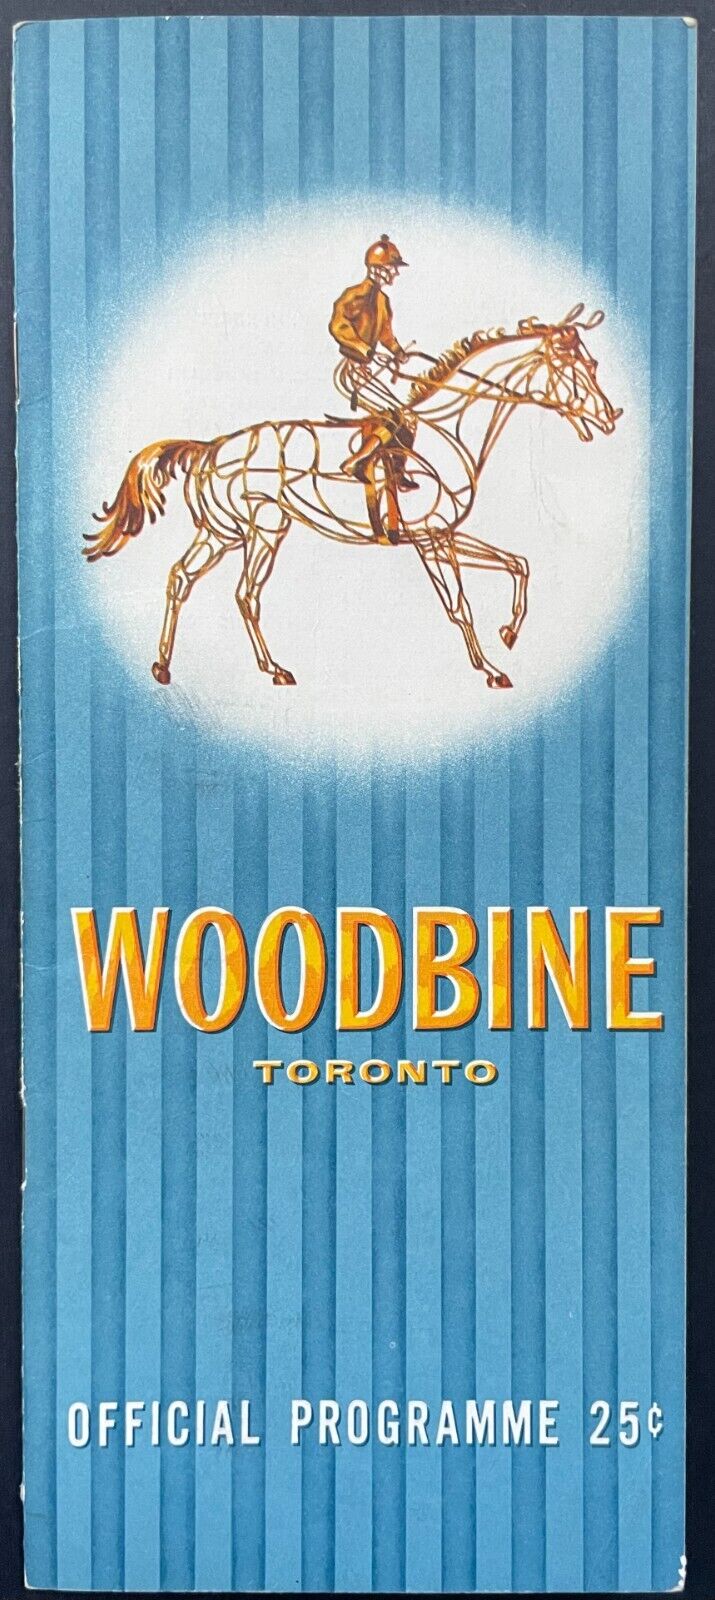 1961 Queen’s Plate Stakes Horse Race Racetrack Program Woodbine Toronto